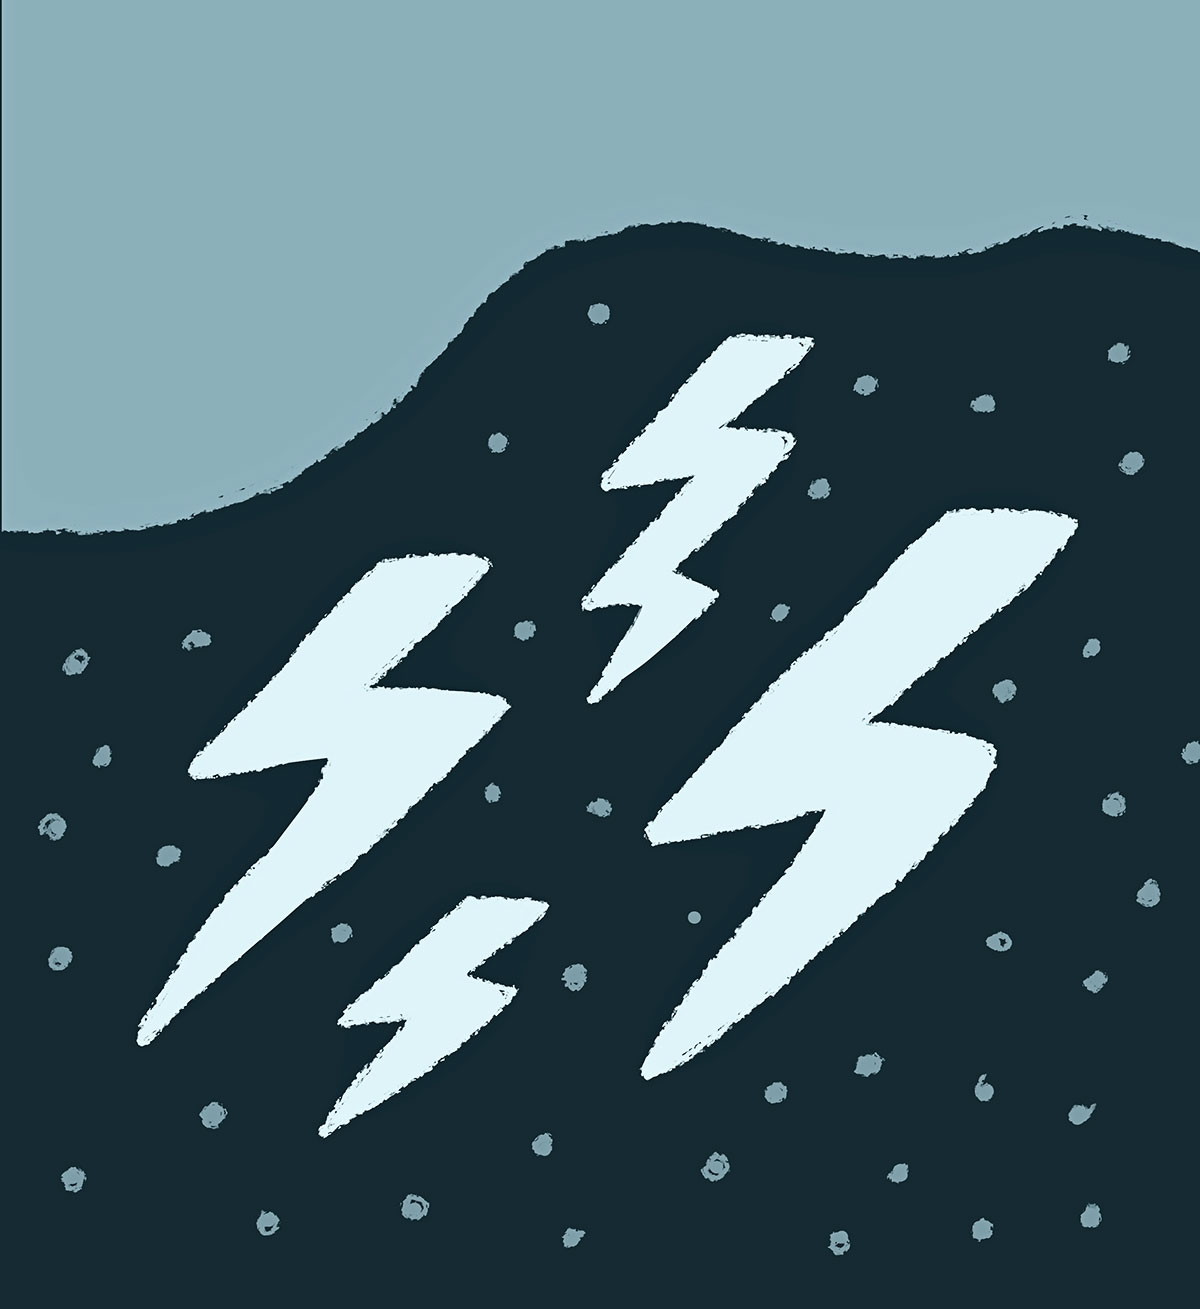 An Illustration of light blue lightning bolts